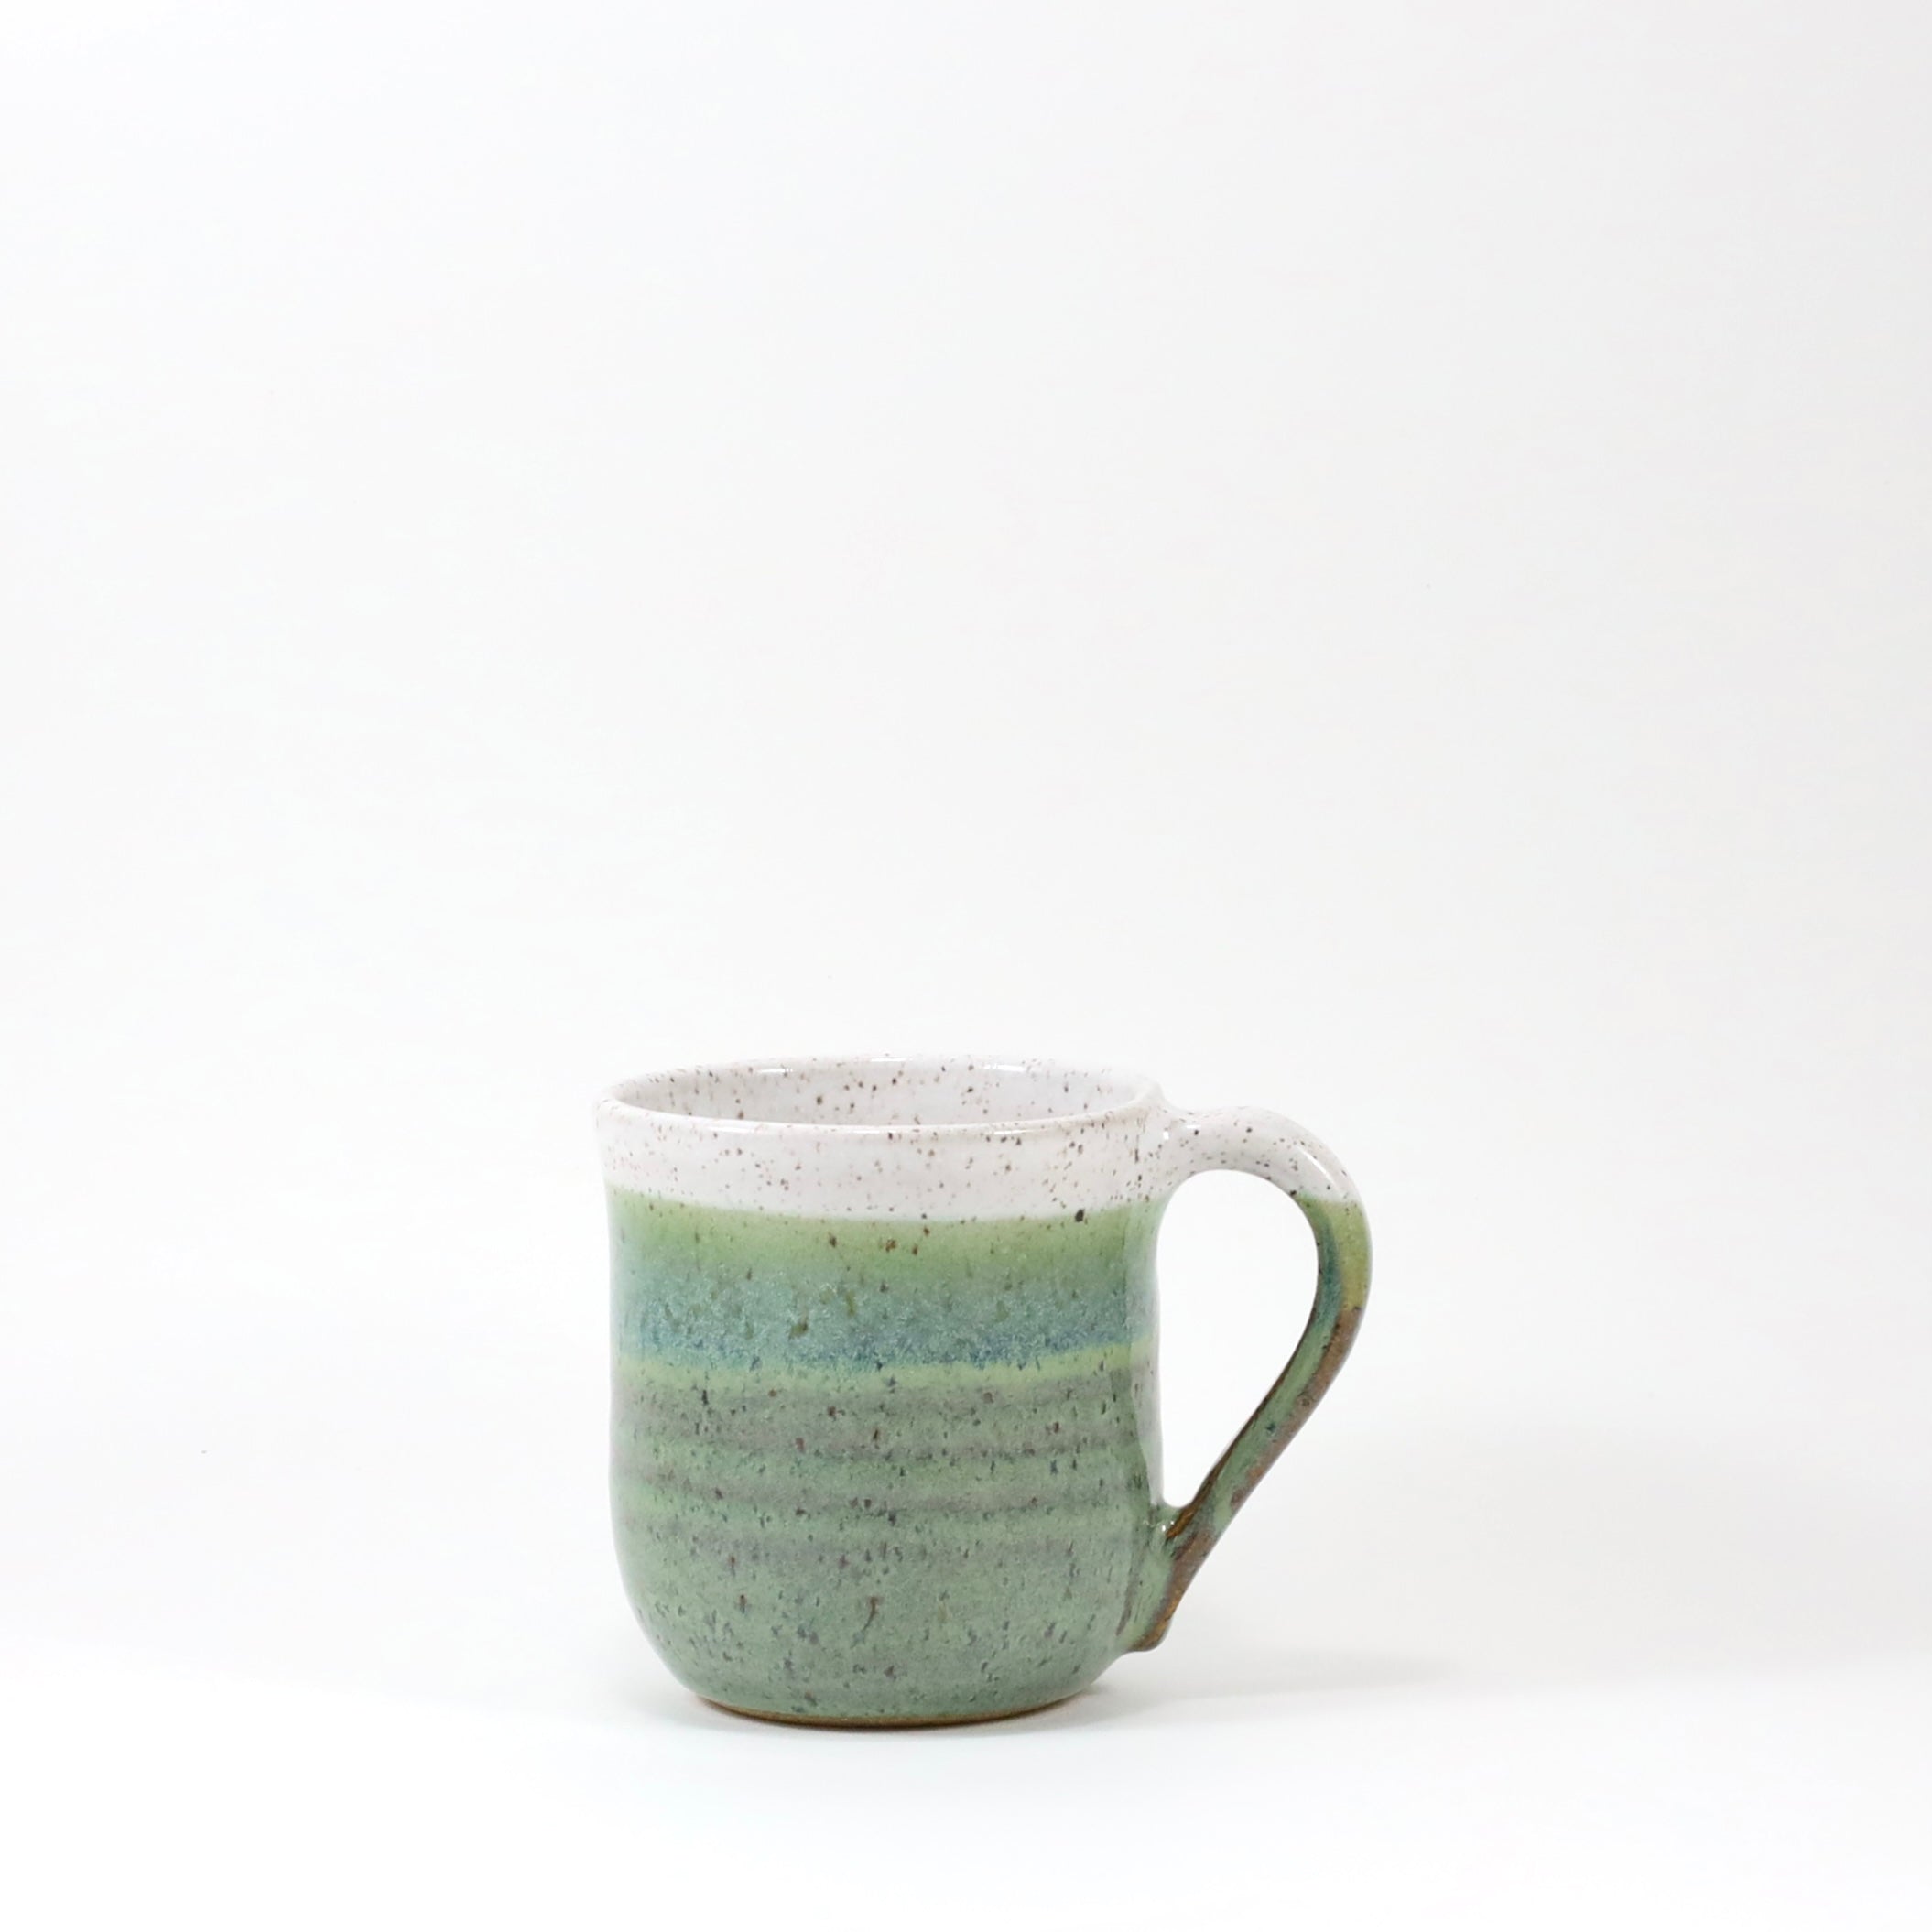 Coffee mug wheel thrown pottery unique coffee mug Aqua Mint Green